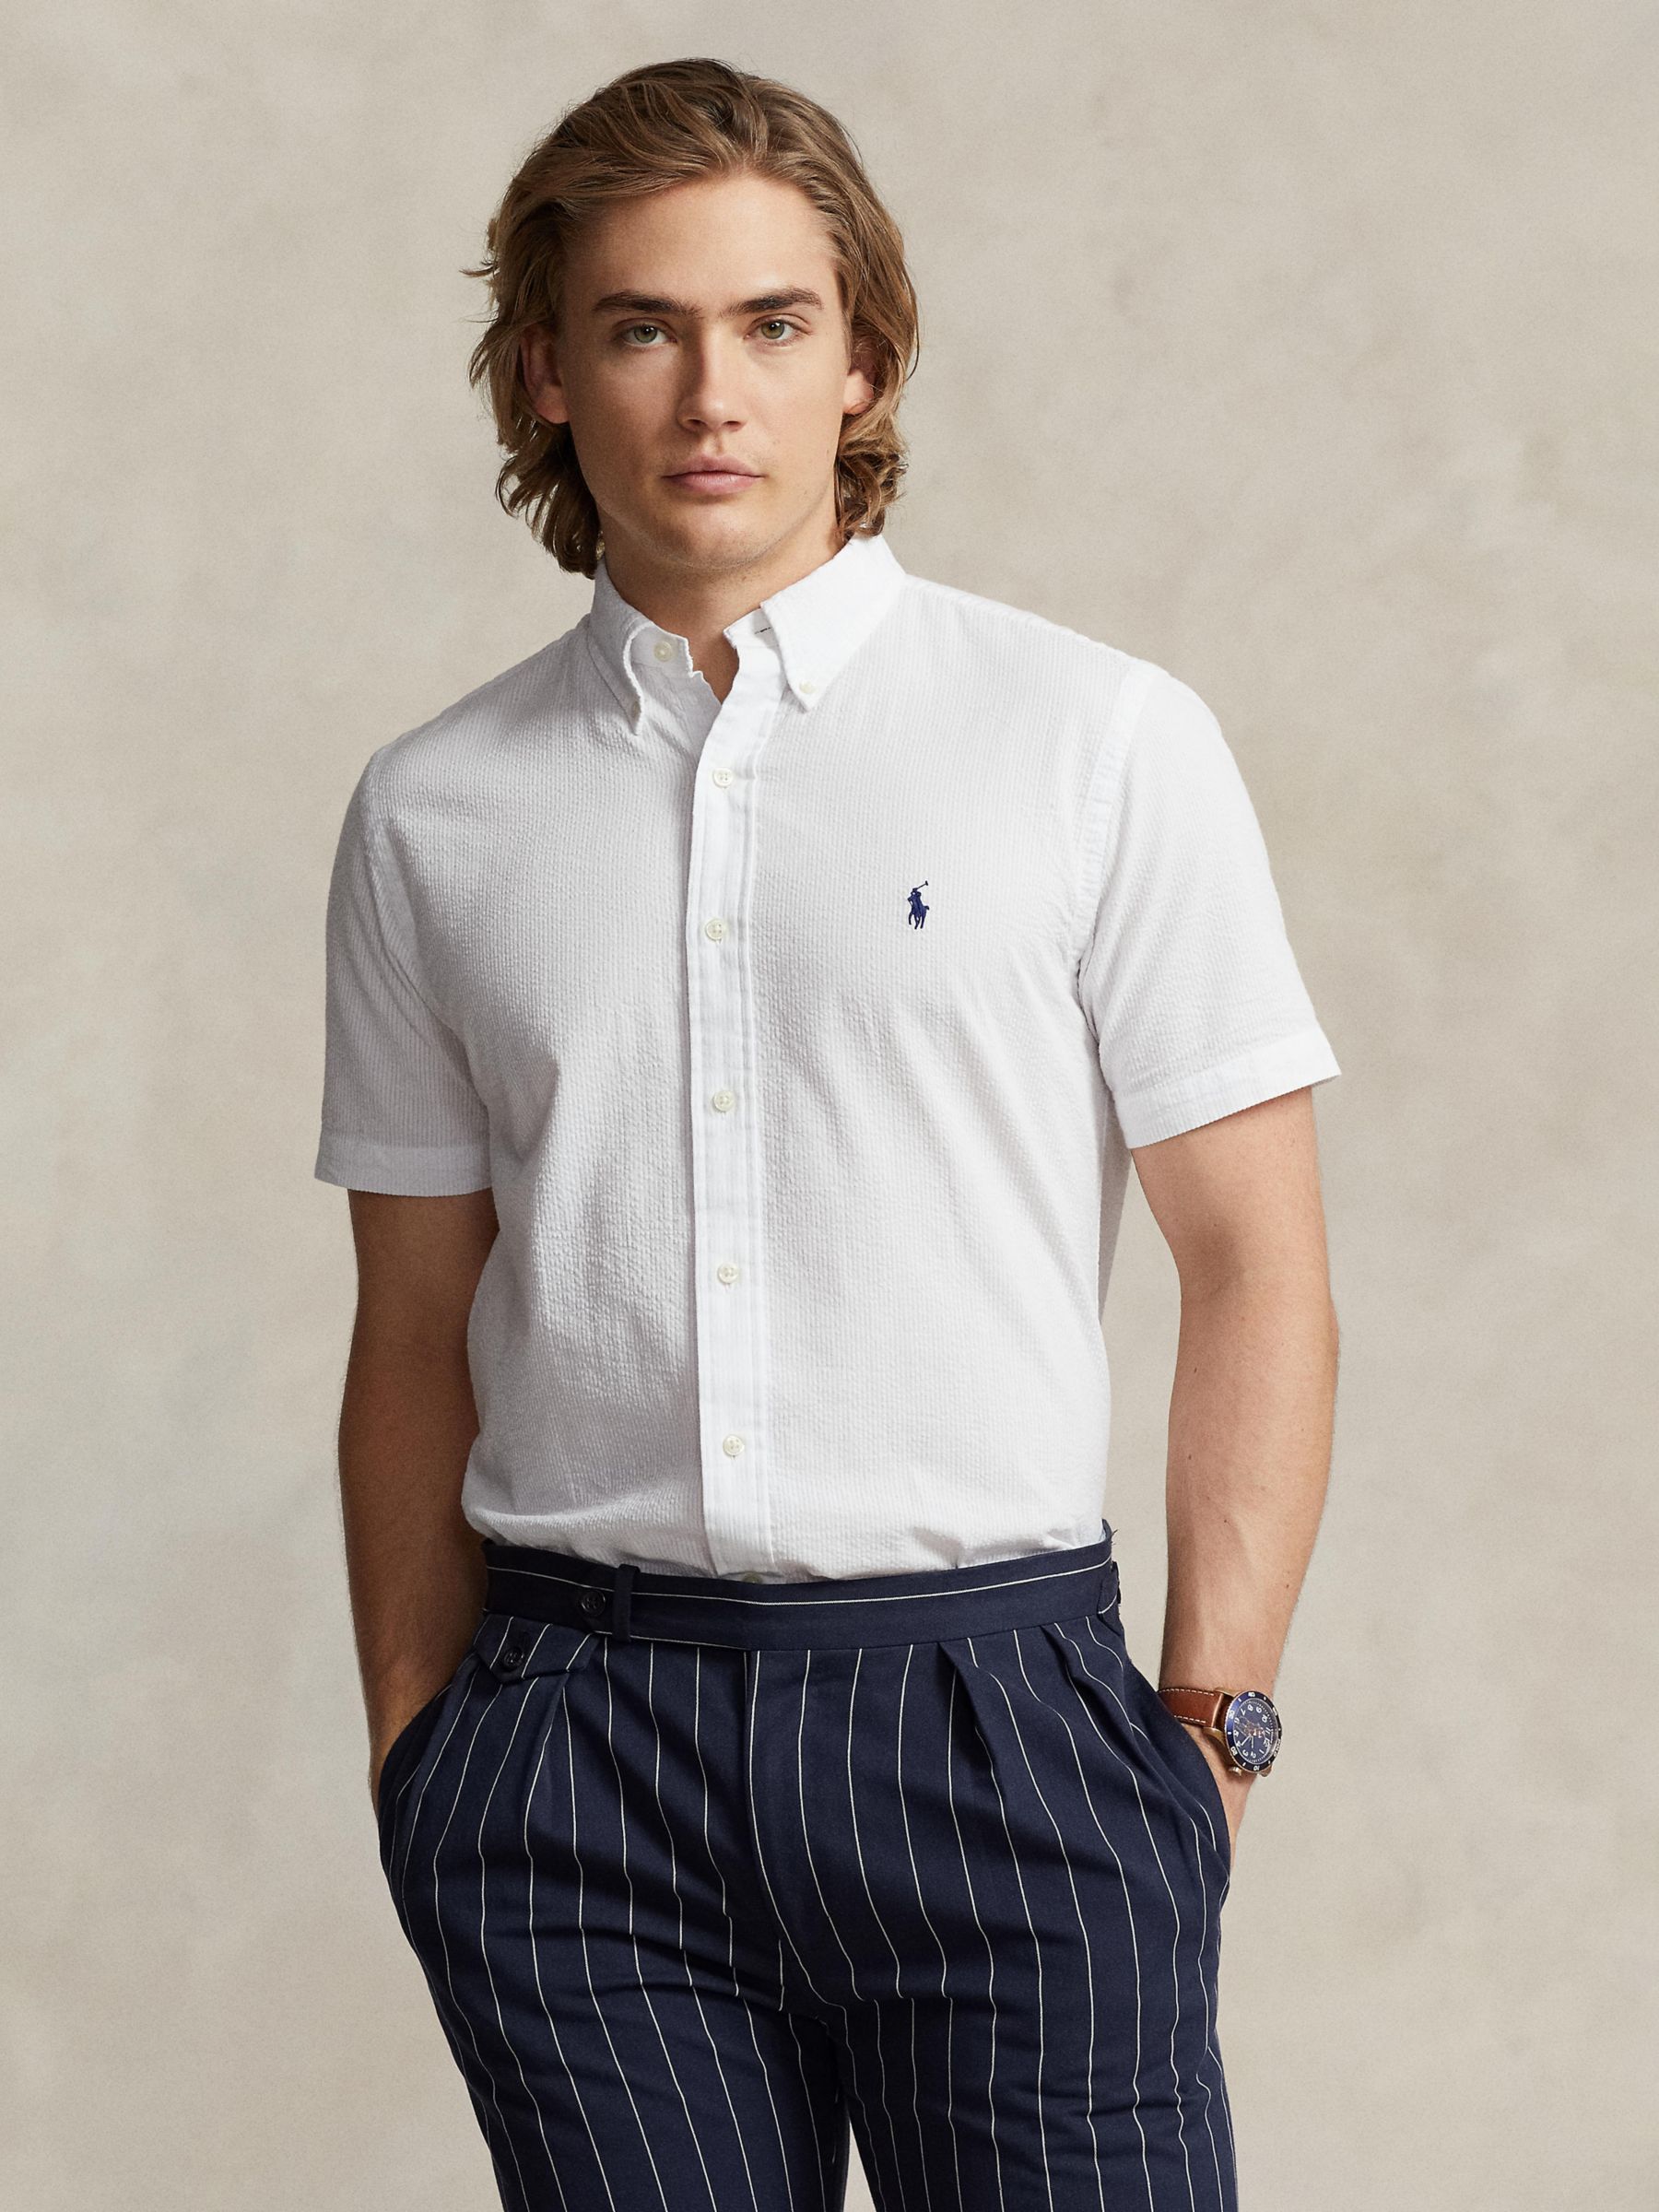 Ralph Lauren Custom Fit Seersucker Shirt, White, S